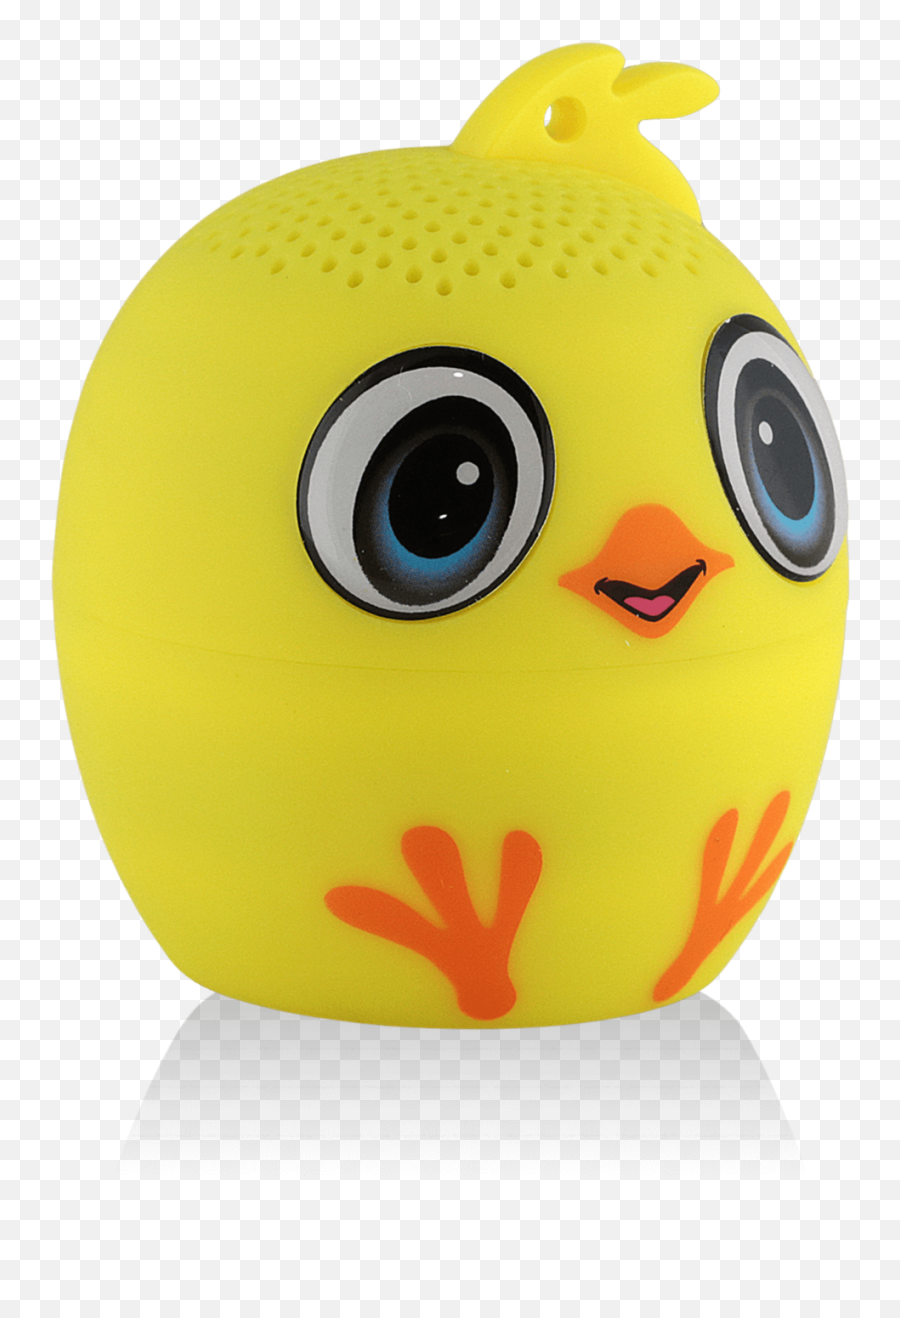 Spielzeug My Audio Pet Chick - Adeedoodah Chick Chicken New Happy Emoji,Chicken Emoticon